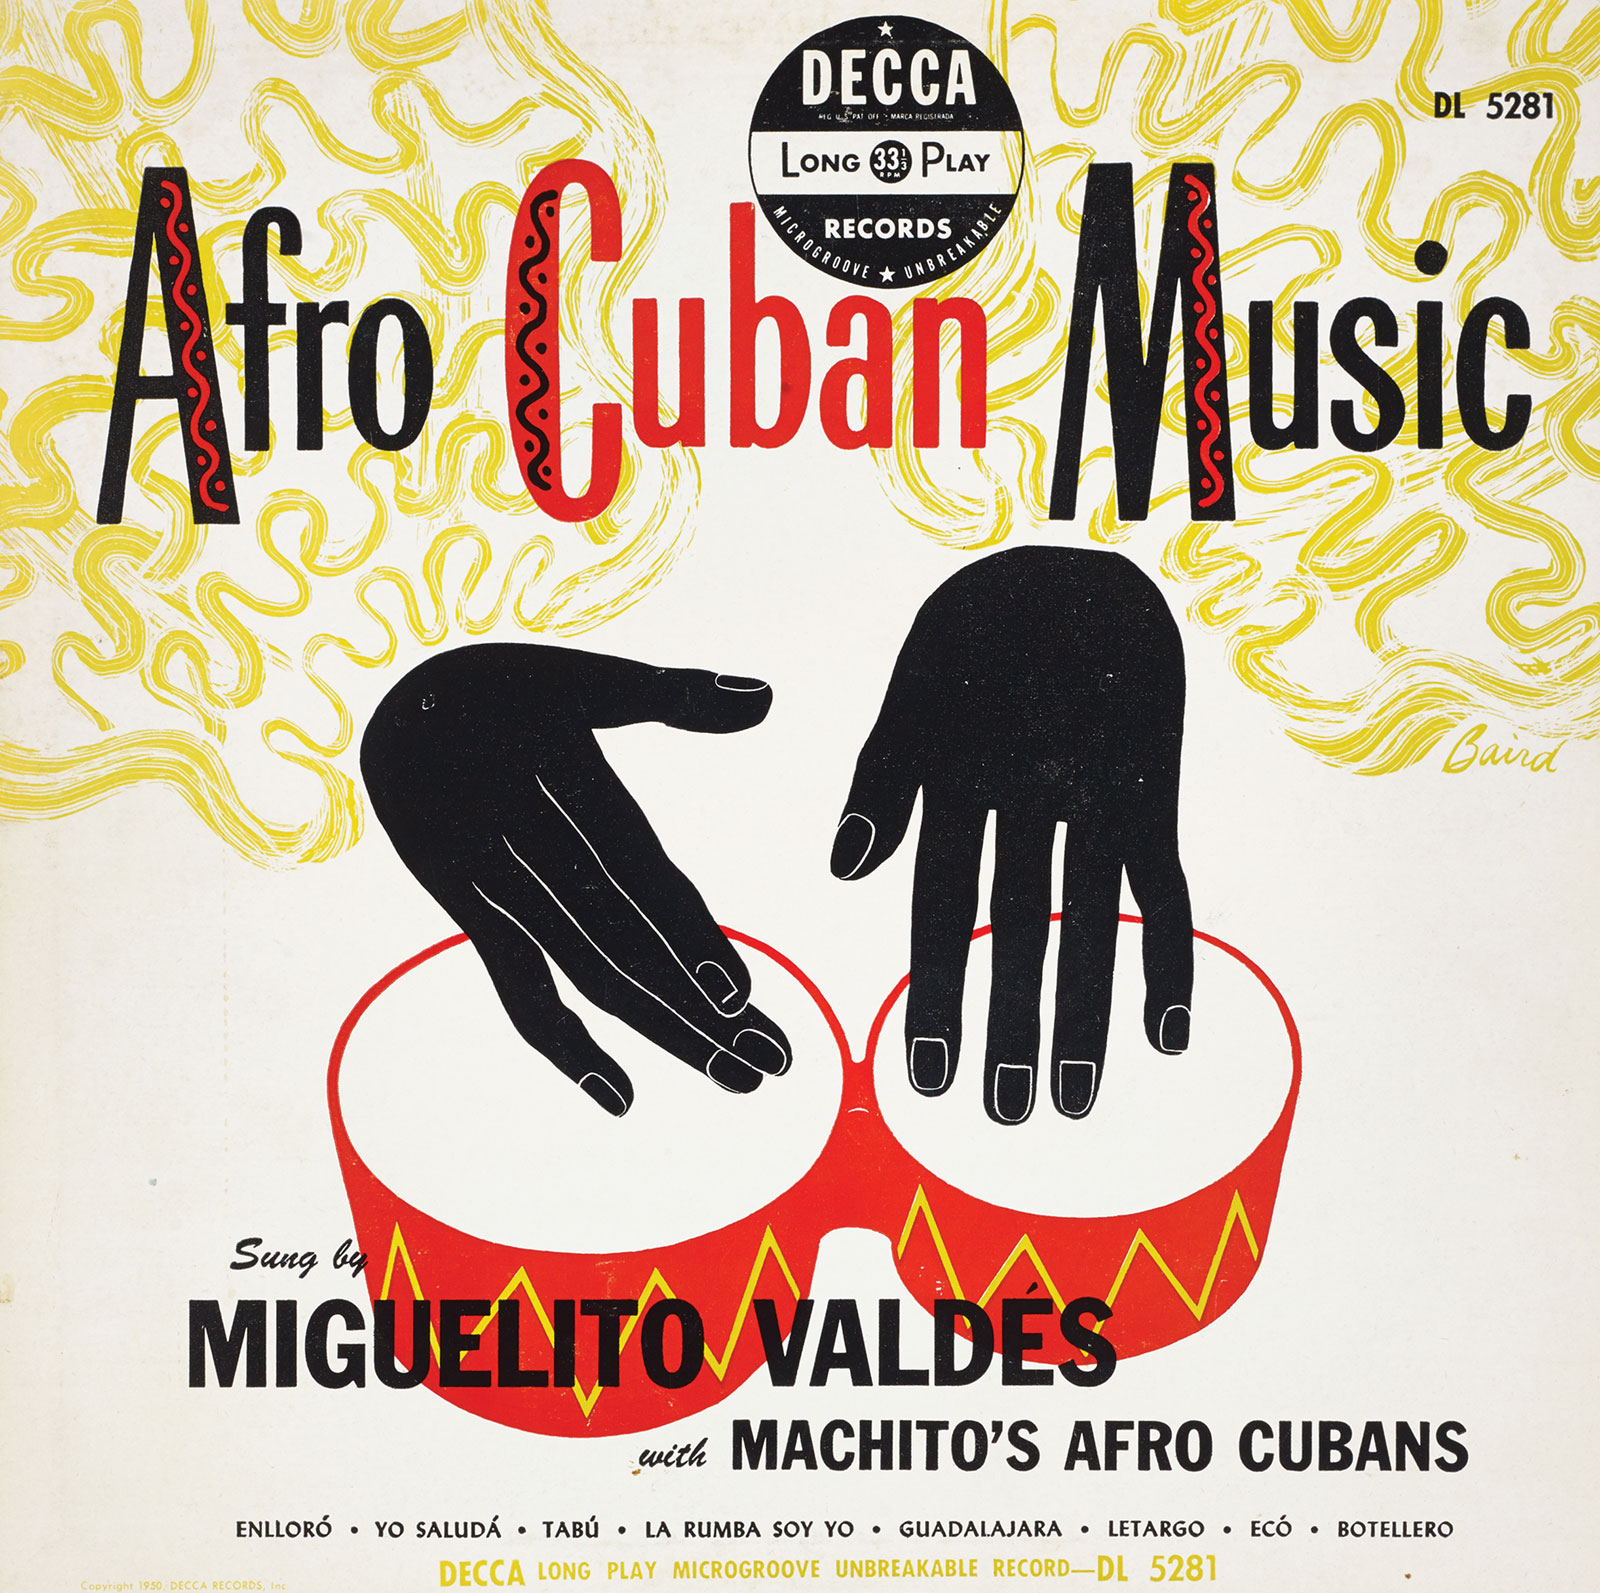 Miguelito Valdés album cover